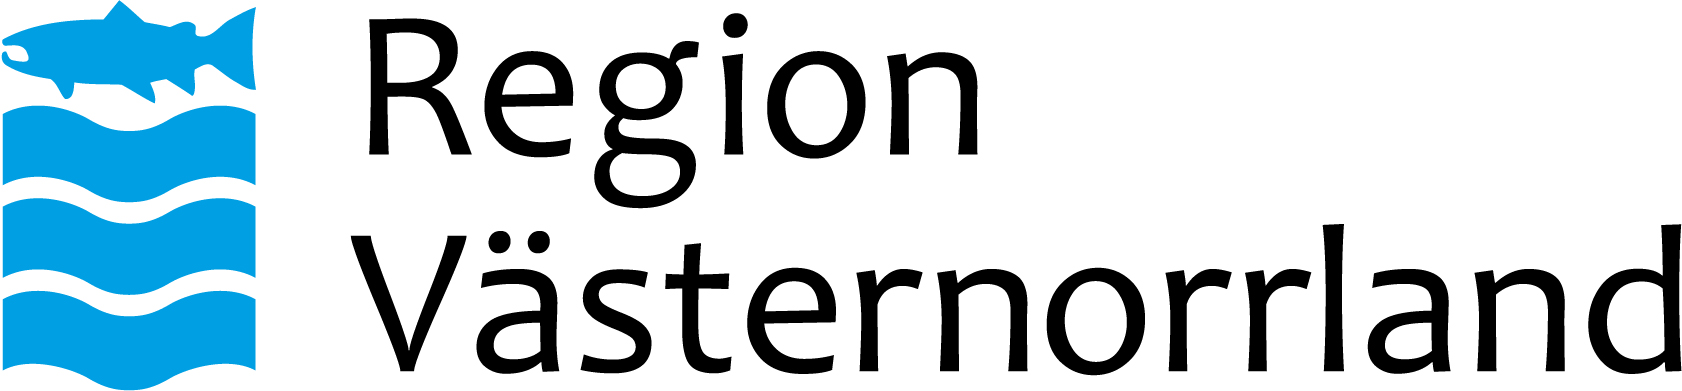 BBH Logo Region Västernorrland